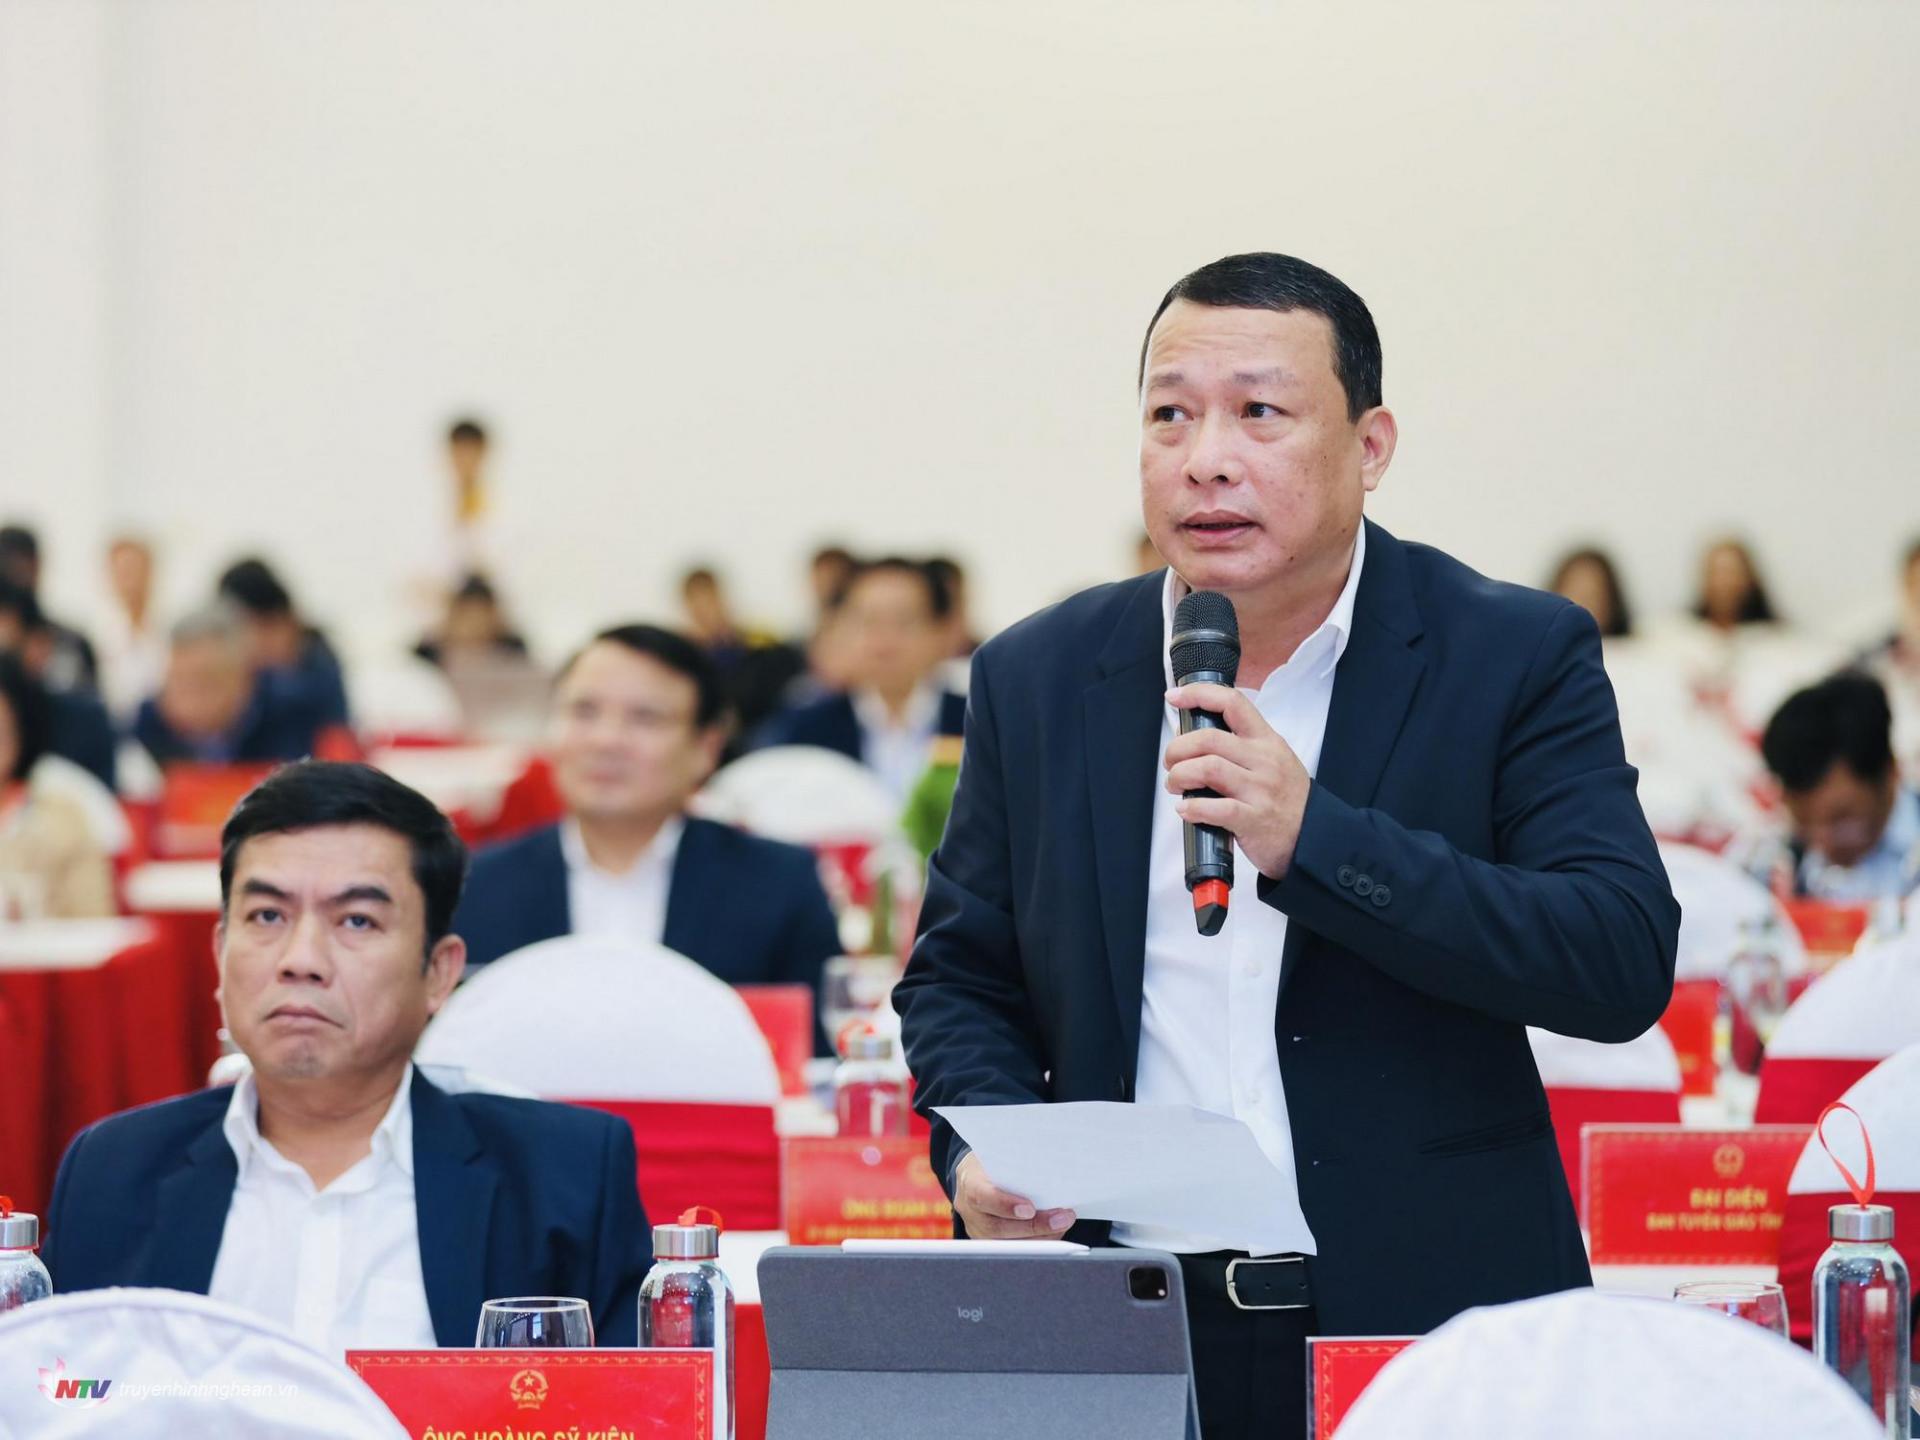 Giám đốc Sở Kế hoạch và Đầu tư Phạm Hồng Quang làm rõ thêm câu hỏi của đại biểu.